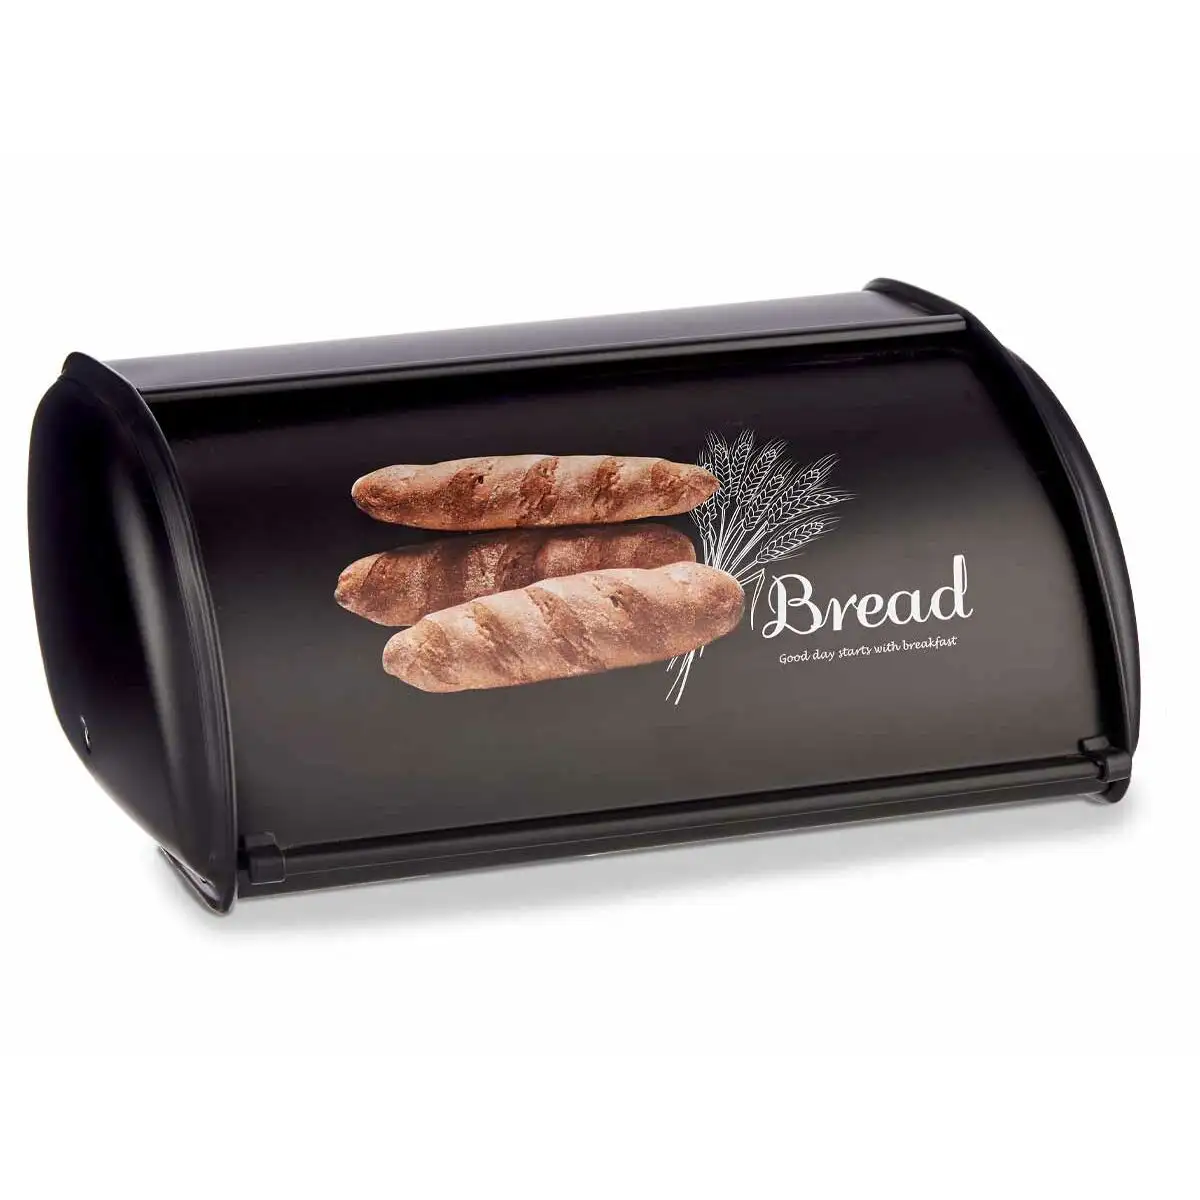 Corbeille a pain bread noir metal 23 x 14 5 x 35 5 cm _1103. DIAYTAR SENEGAL - L'Artisanat à Portée de Clic. Découvrez notre boutique en ligne pour trouver des produits uniques qui célèbrent la créativité et l'artisanat sénégalais.